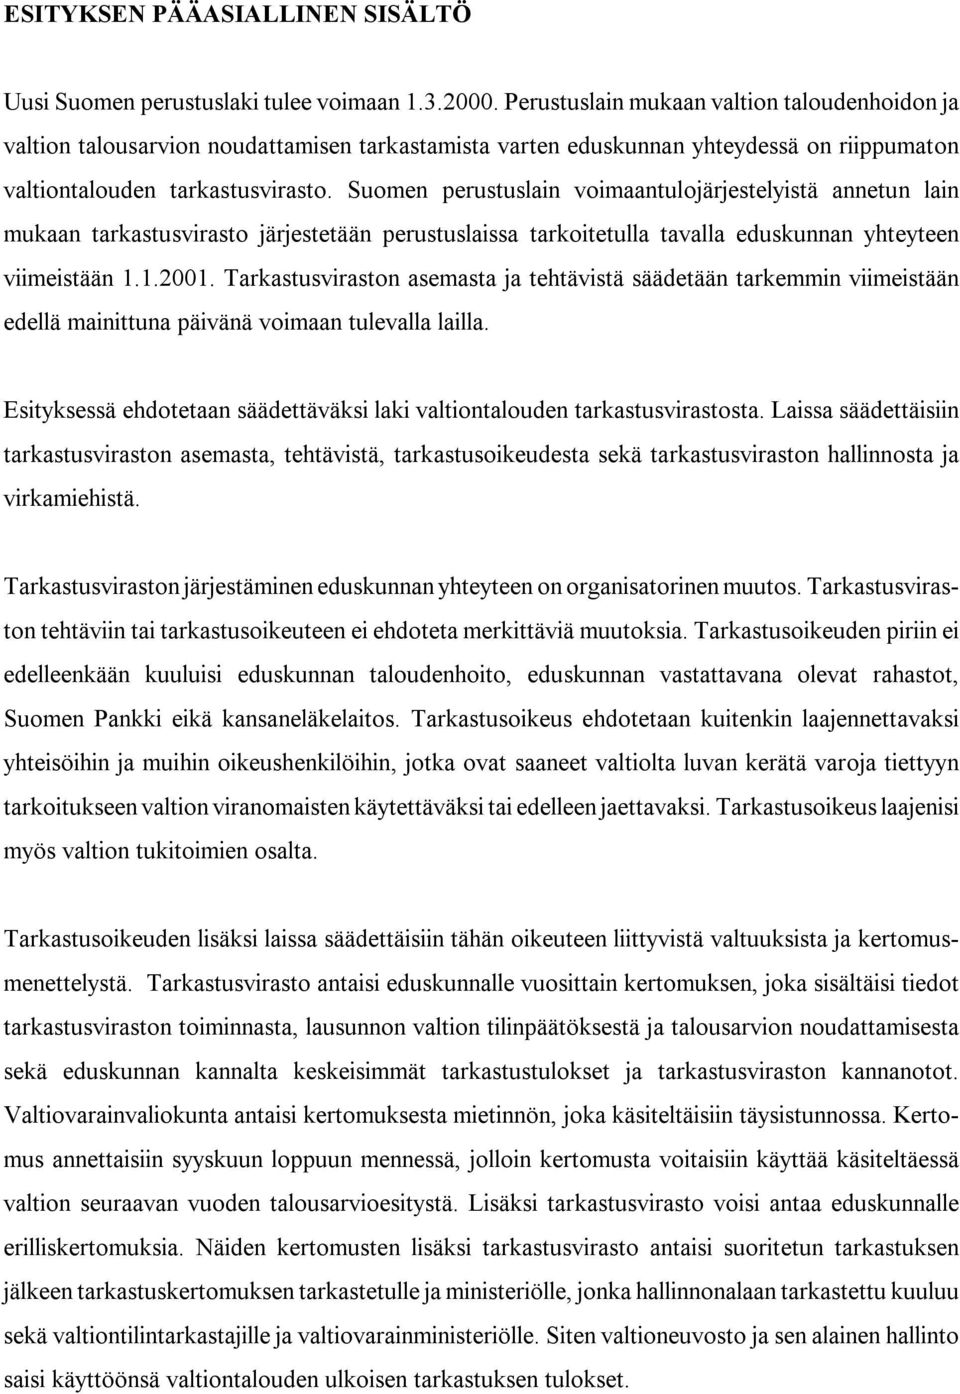 Suomen perustuslain voimaantulojärjestelyistä annetun lain mukaan tarkastusvirasto järjestetään perustuslaissa tarkoitetulla tavalla eduskunnan yhteyteen viimeistään 1.1.2001.